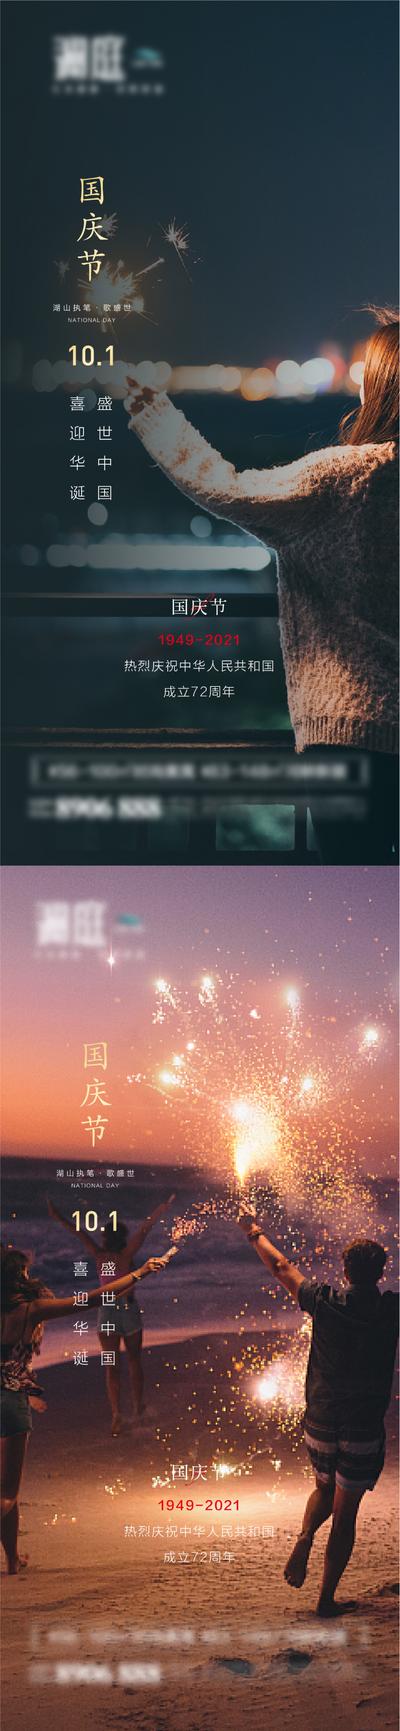 南门网 国庆节微信海报